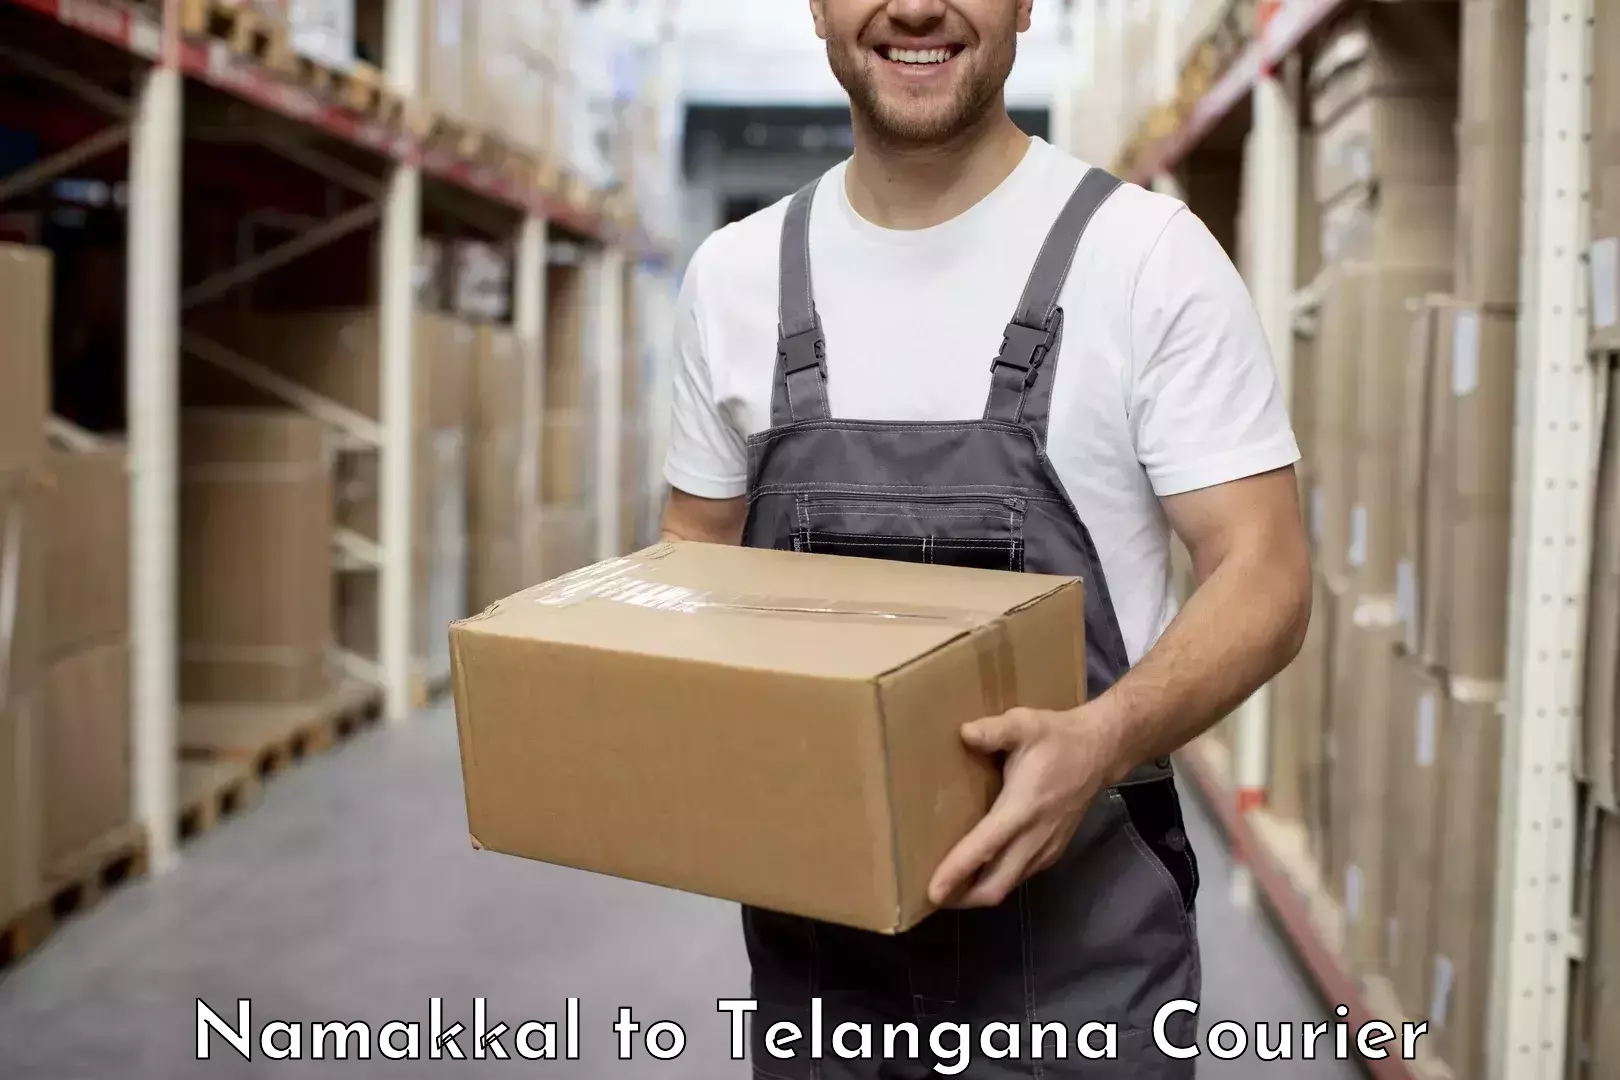 Express logistics providers Namakkal to Ramannapeta